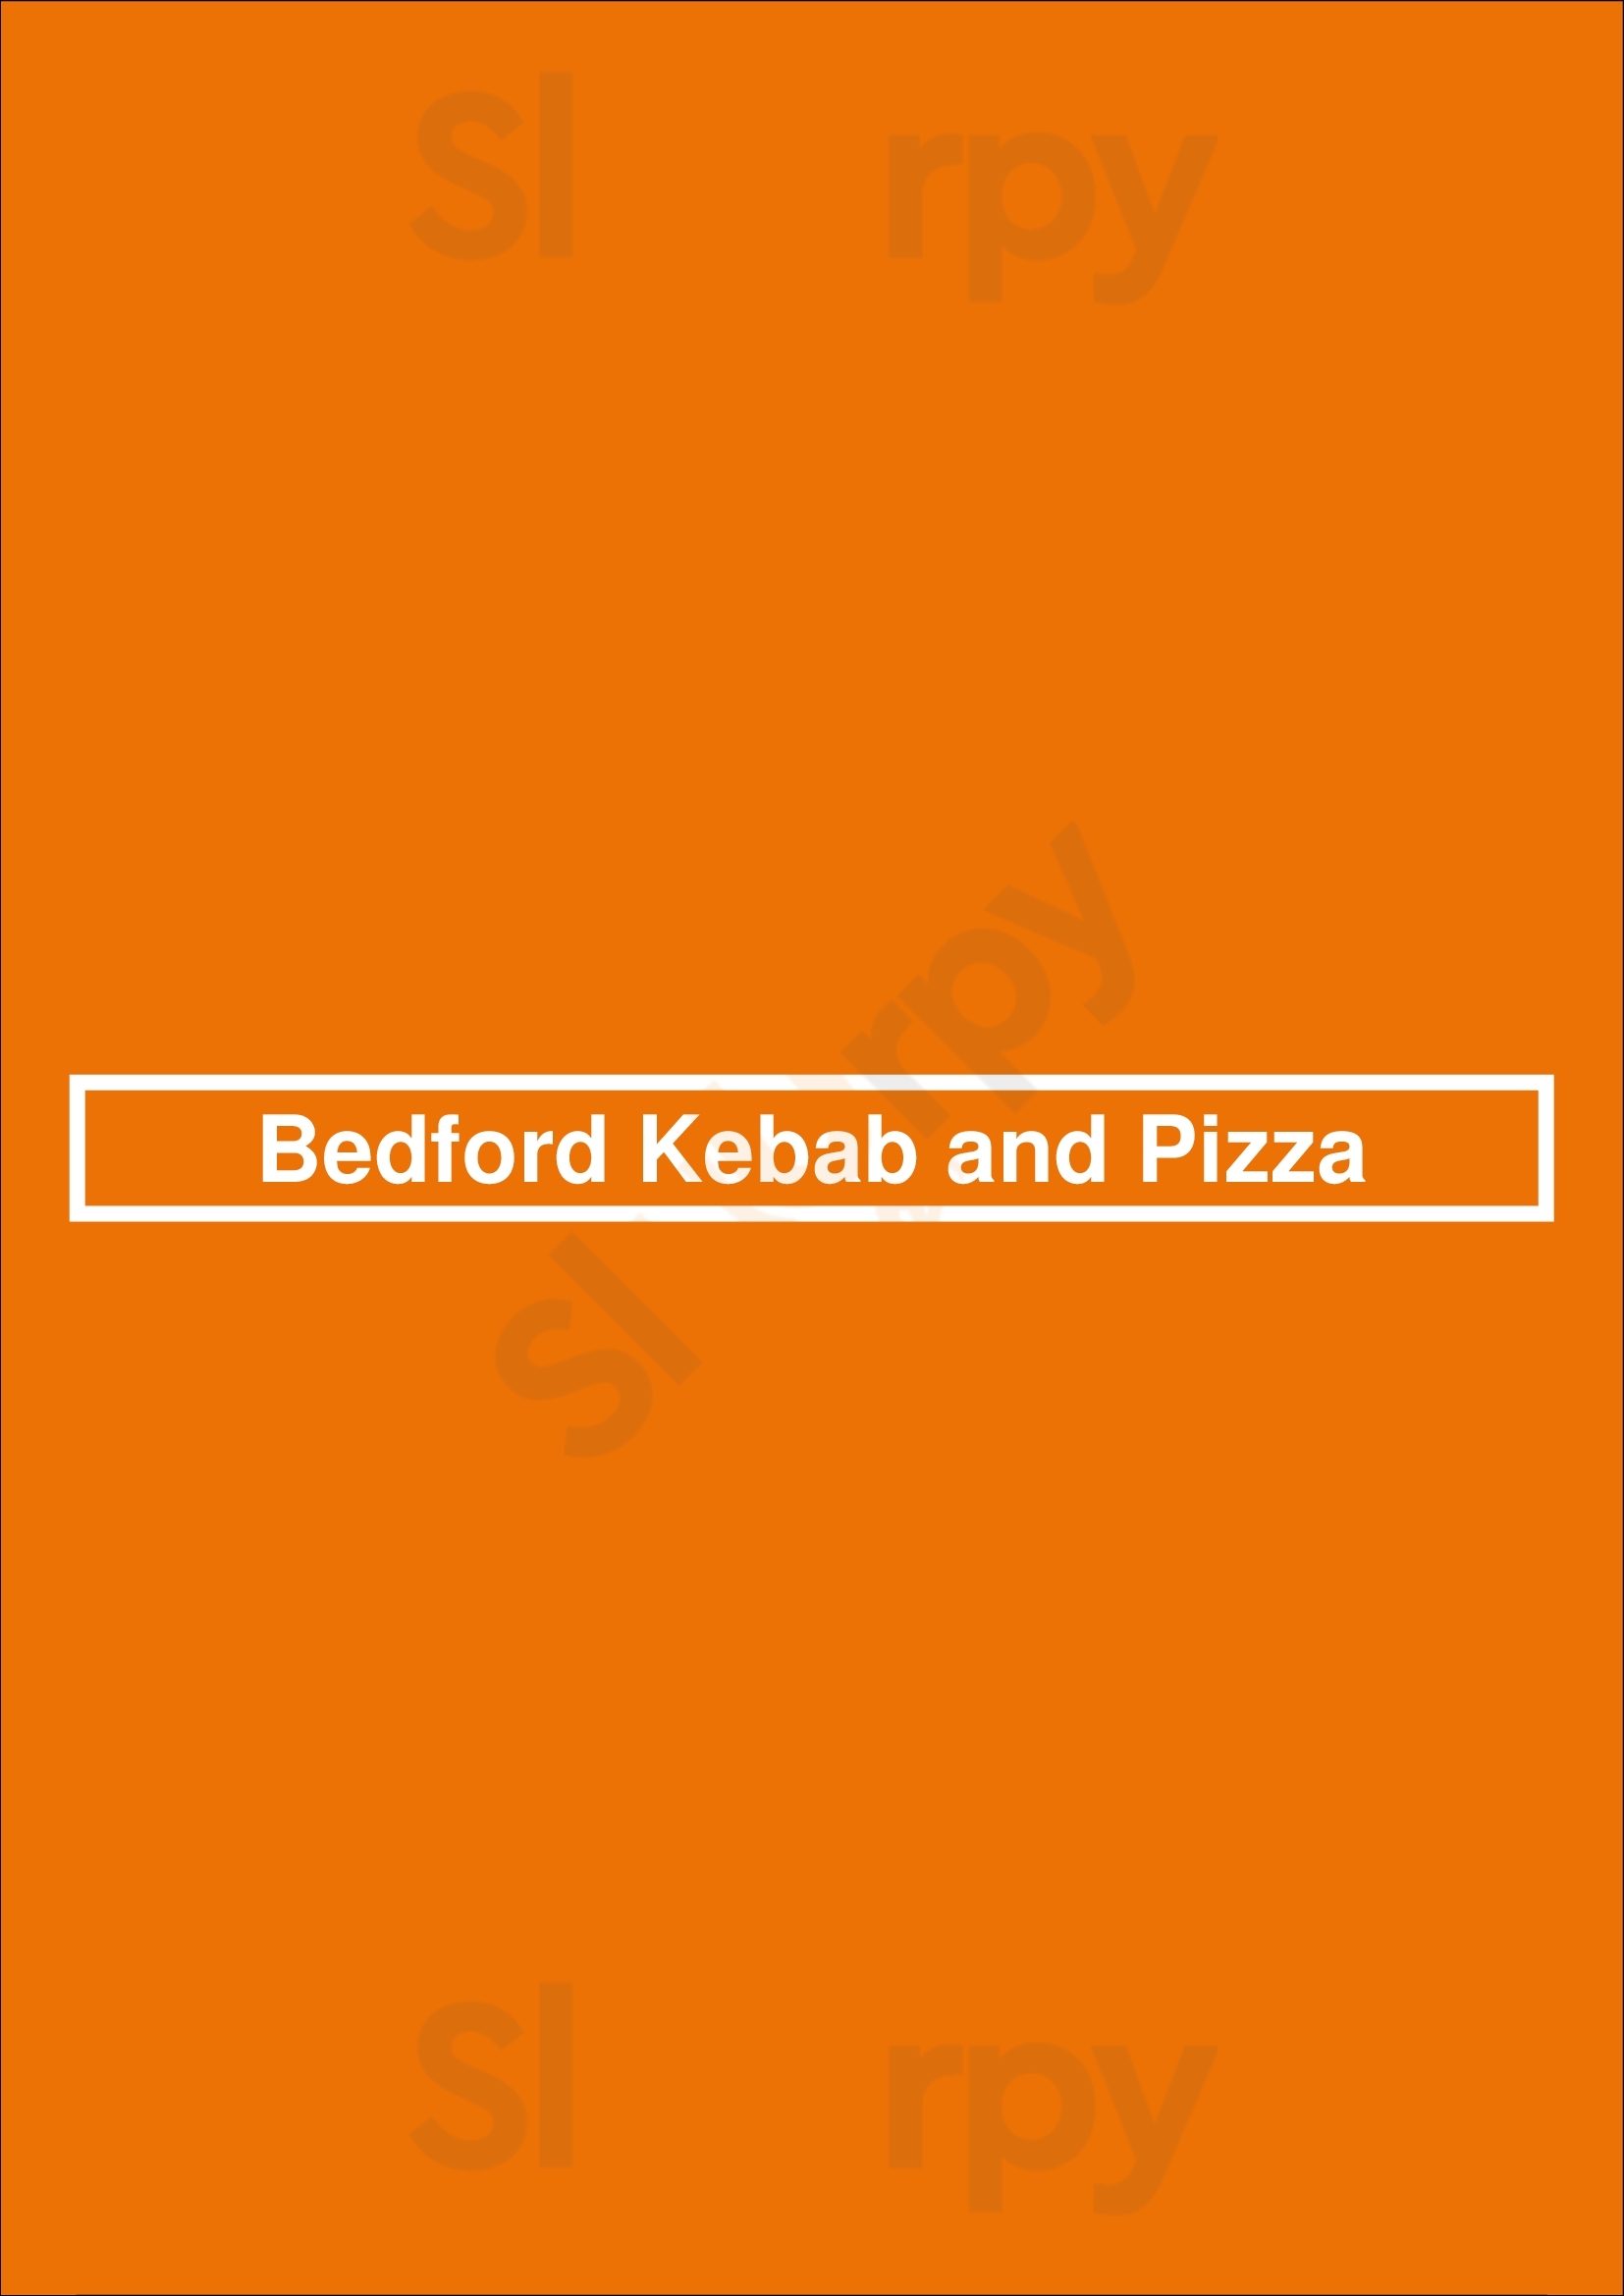 Bedford Kebab & Pizza House Bedford Menu - 1